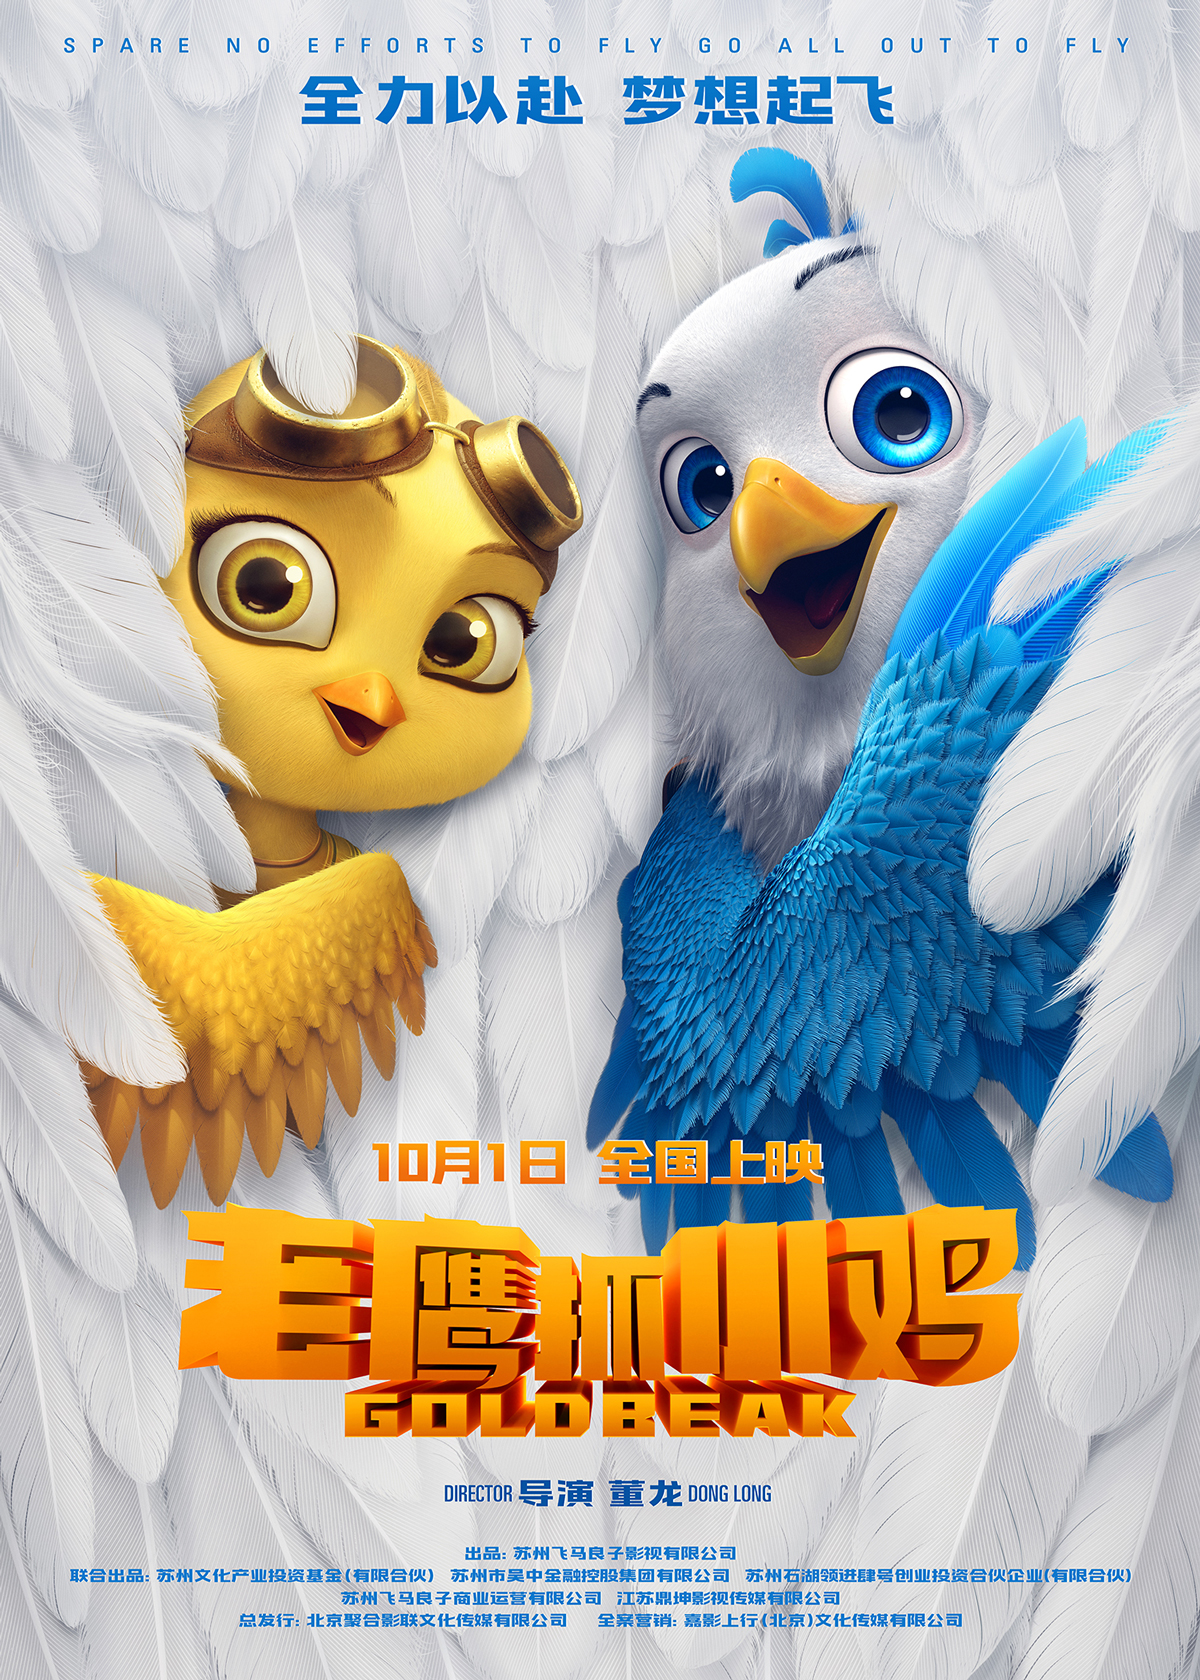 電影《老鷹抓小雞》定檔10月1日 讓國漫精緻到羽翼豐滿